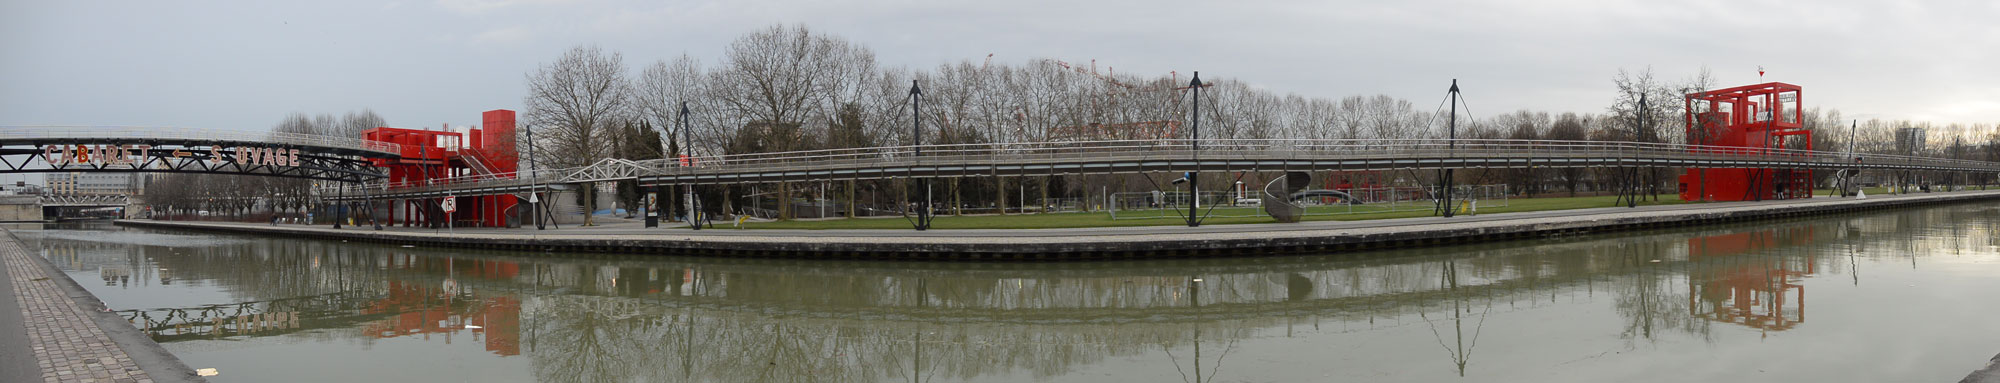 Photo panoramique prise avec le Nikon 1 AW1 : Canal de l'Ourcq, Paris 01 2014. Ph. Moctar KANE.